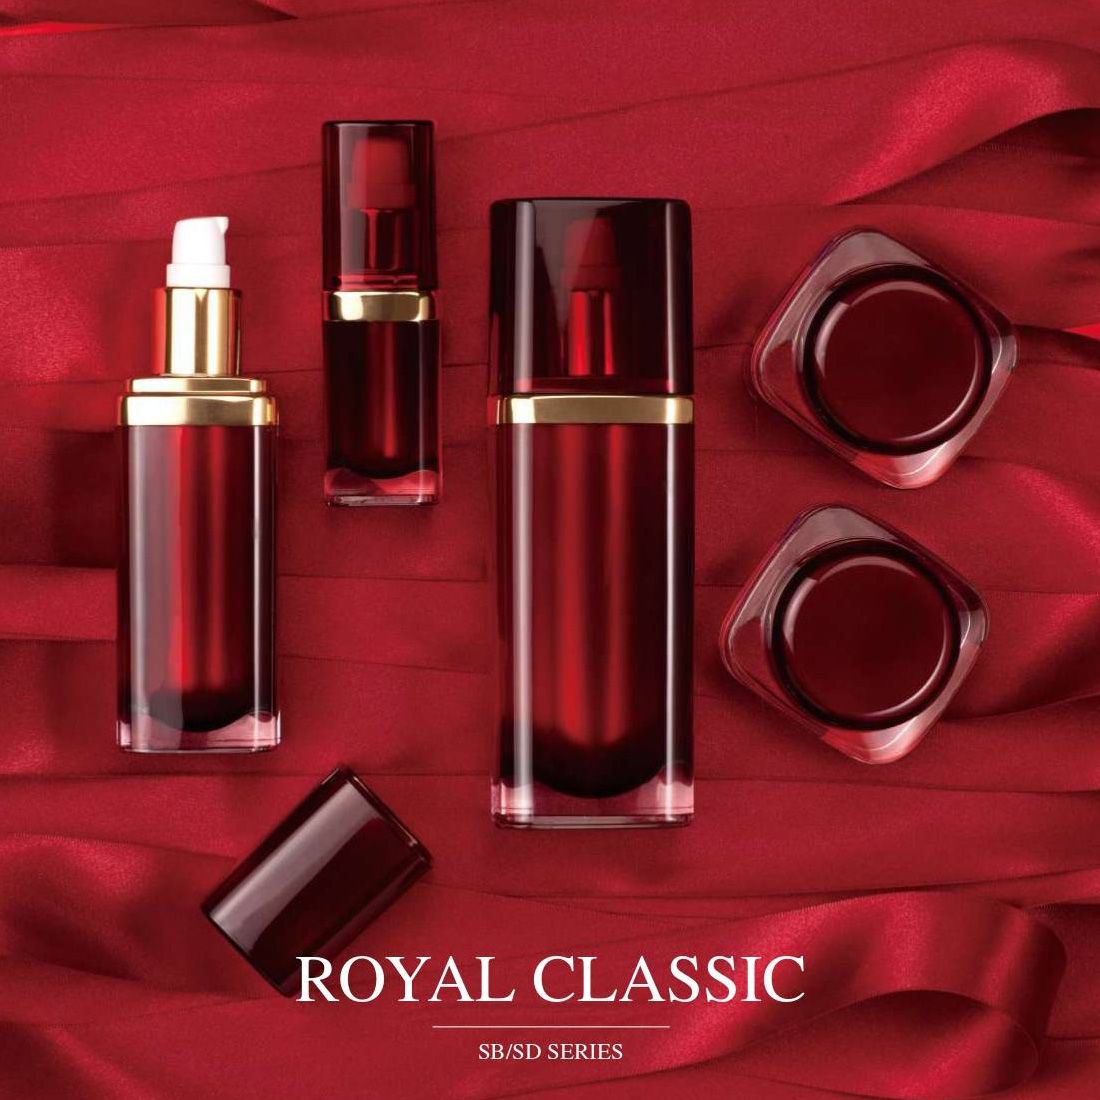 Royal Classics (акриловая роскошная упаковка для косметики и средств по уходу за кожей) Серия SB/SD